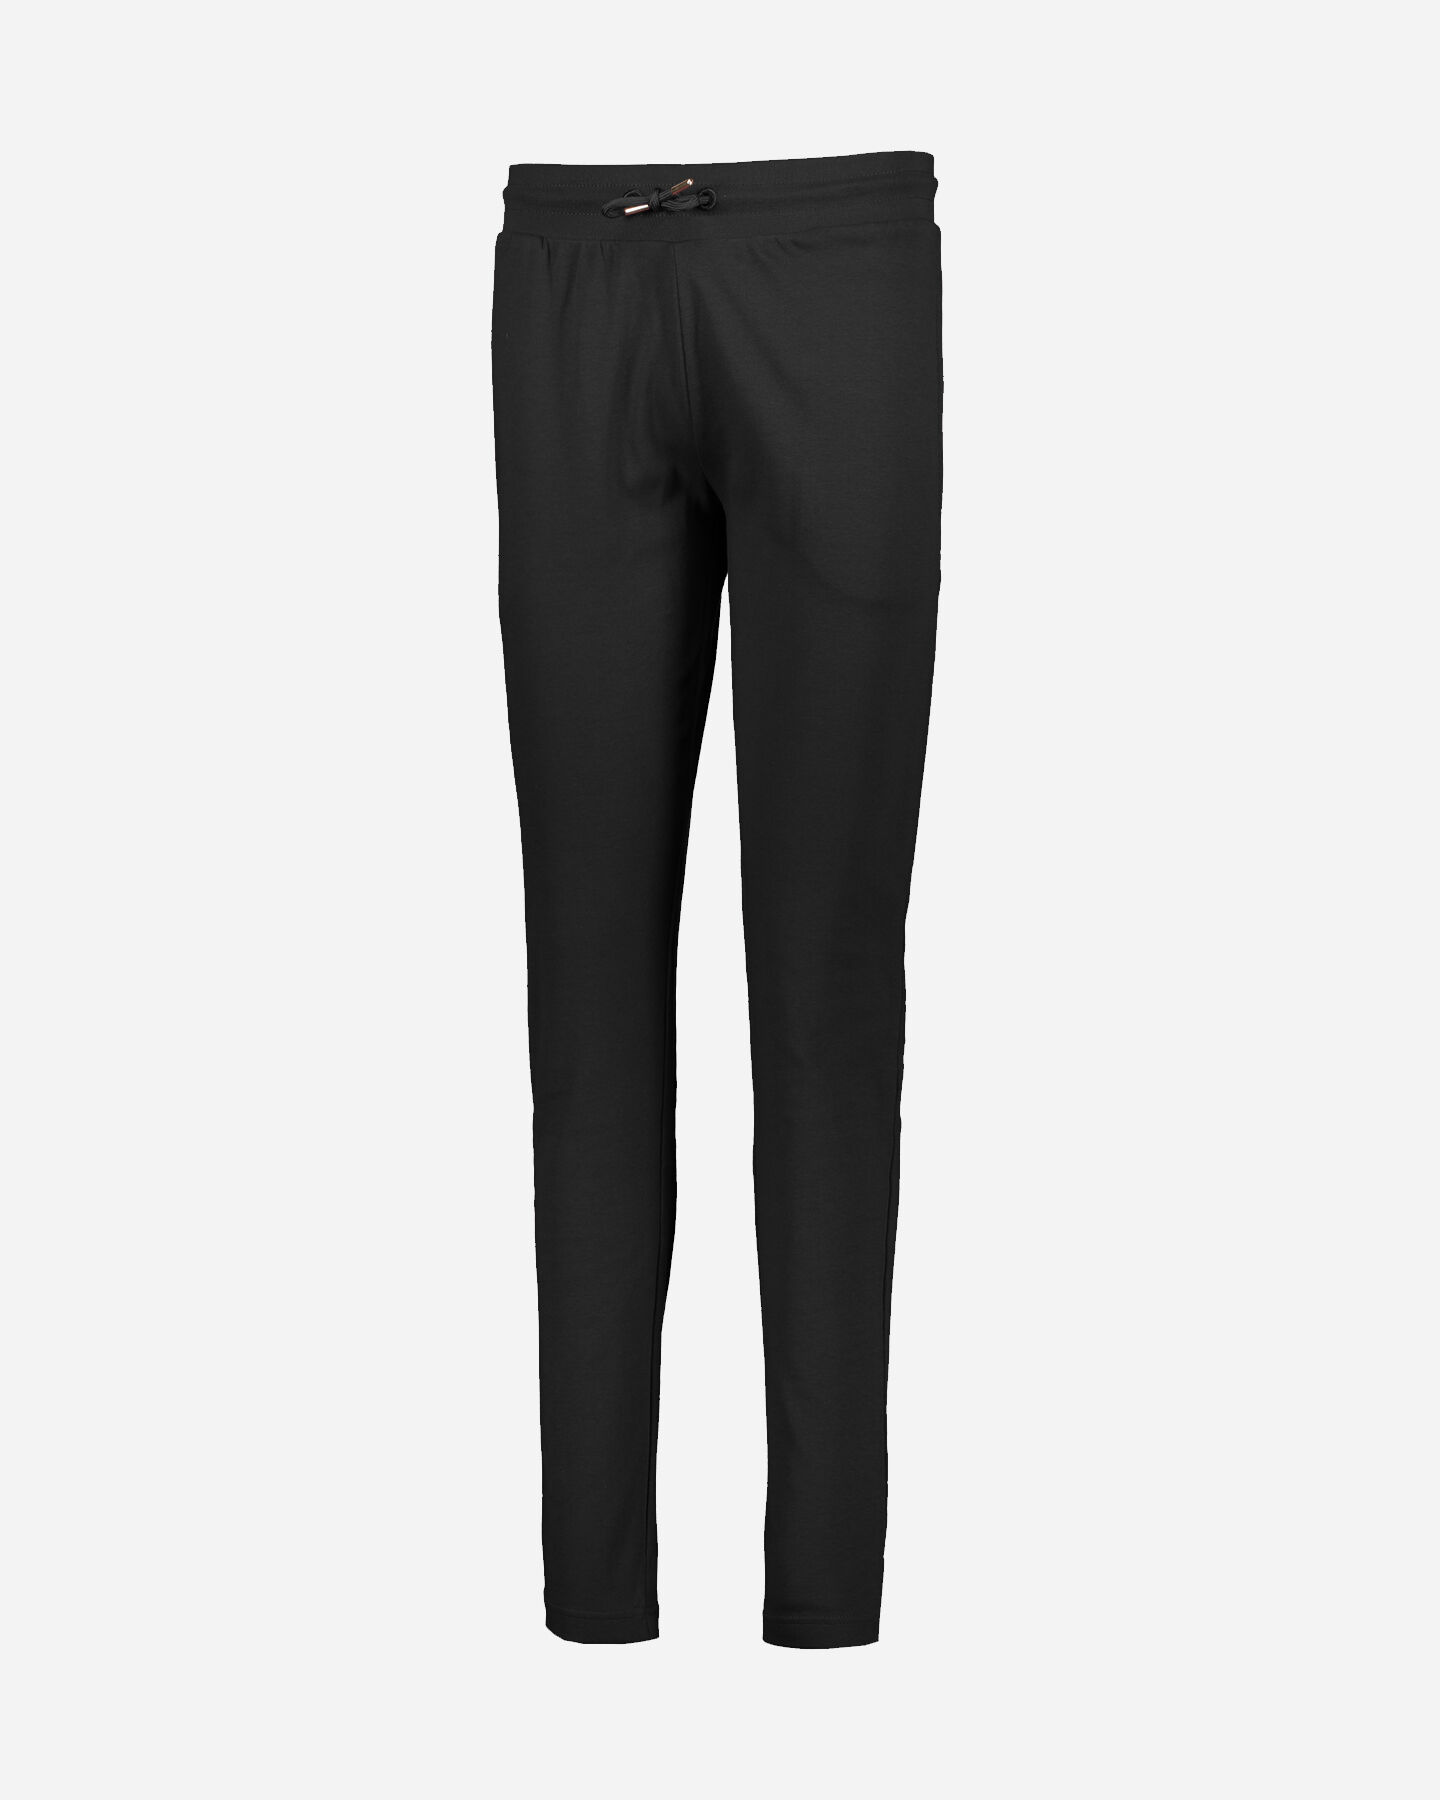  Pantalone ADMIRAL CLASSIC W S4075391|050|S scatto 0